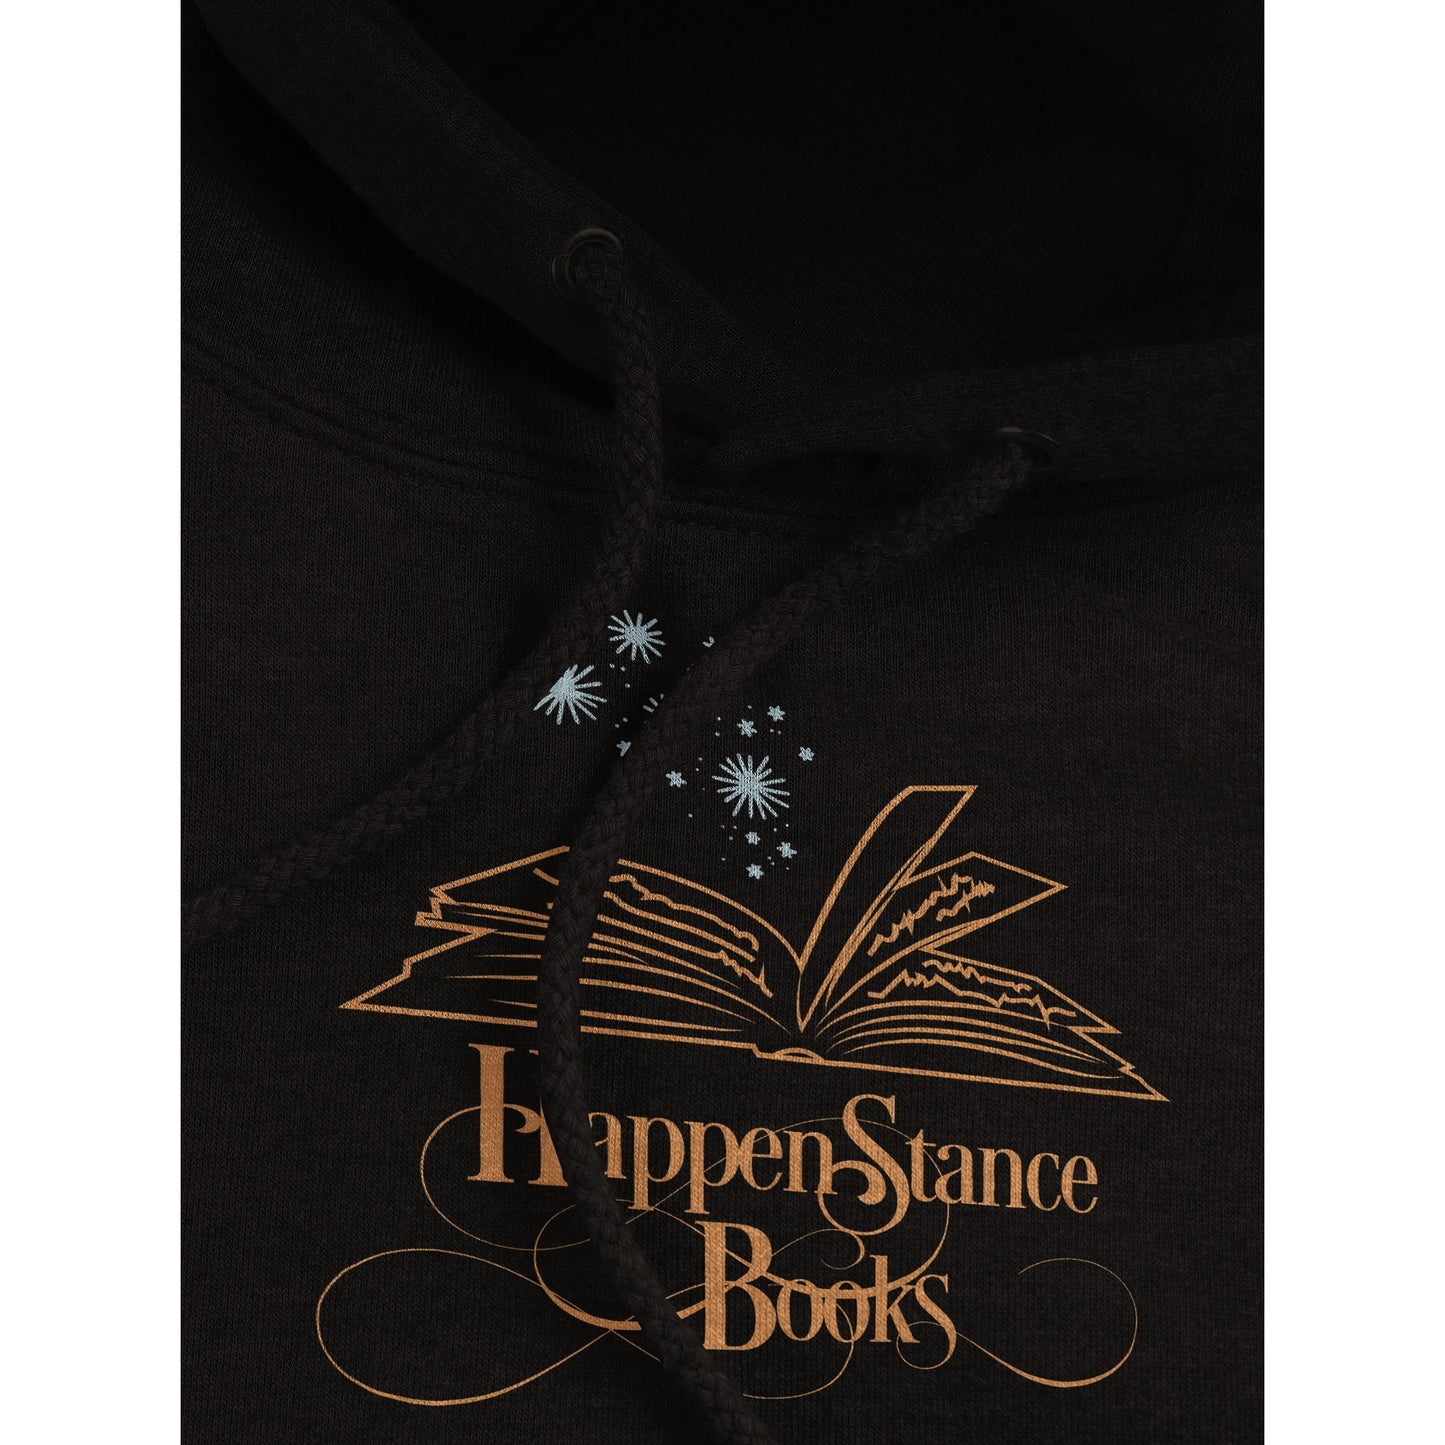 Happenstance Books Premium Unisex Pullover Hoodie